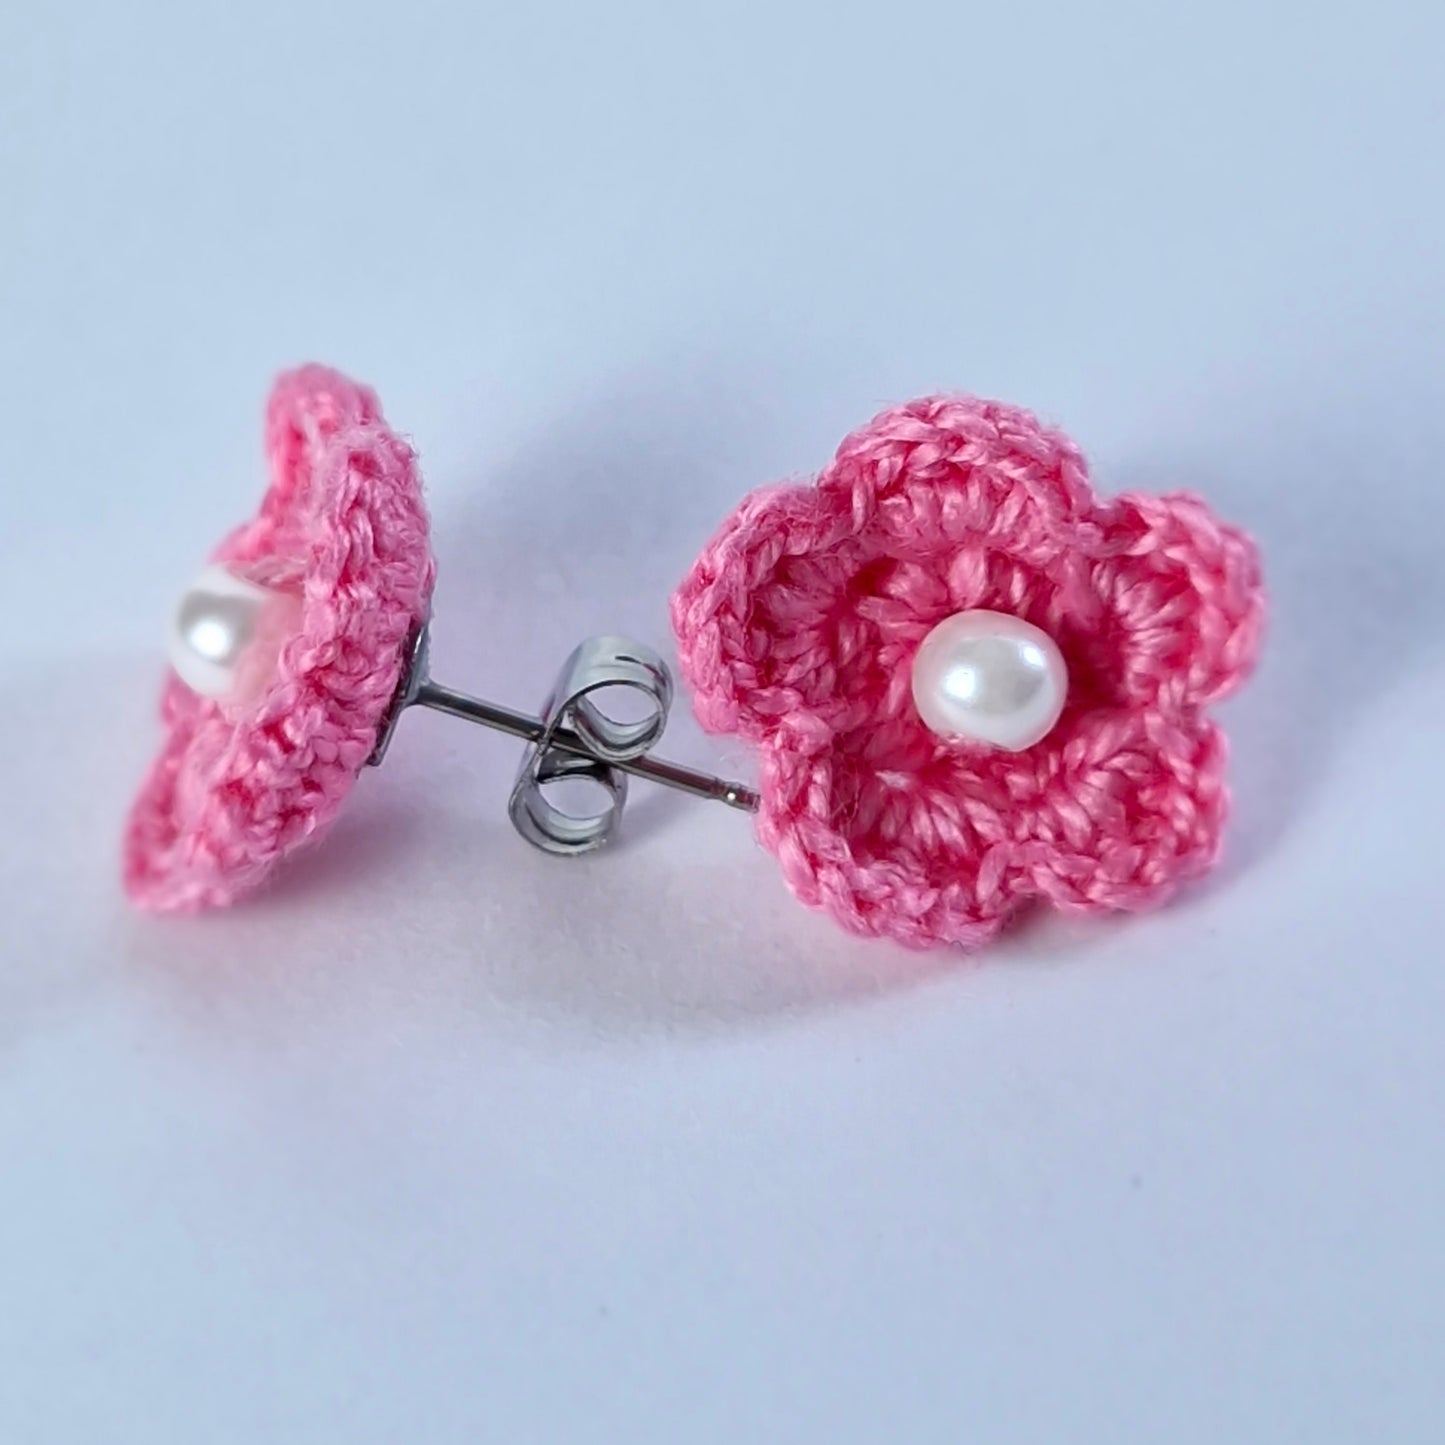 Crochet pink small flowers earrings